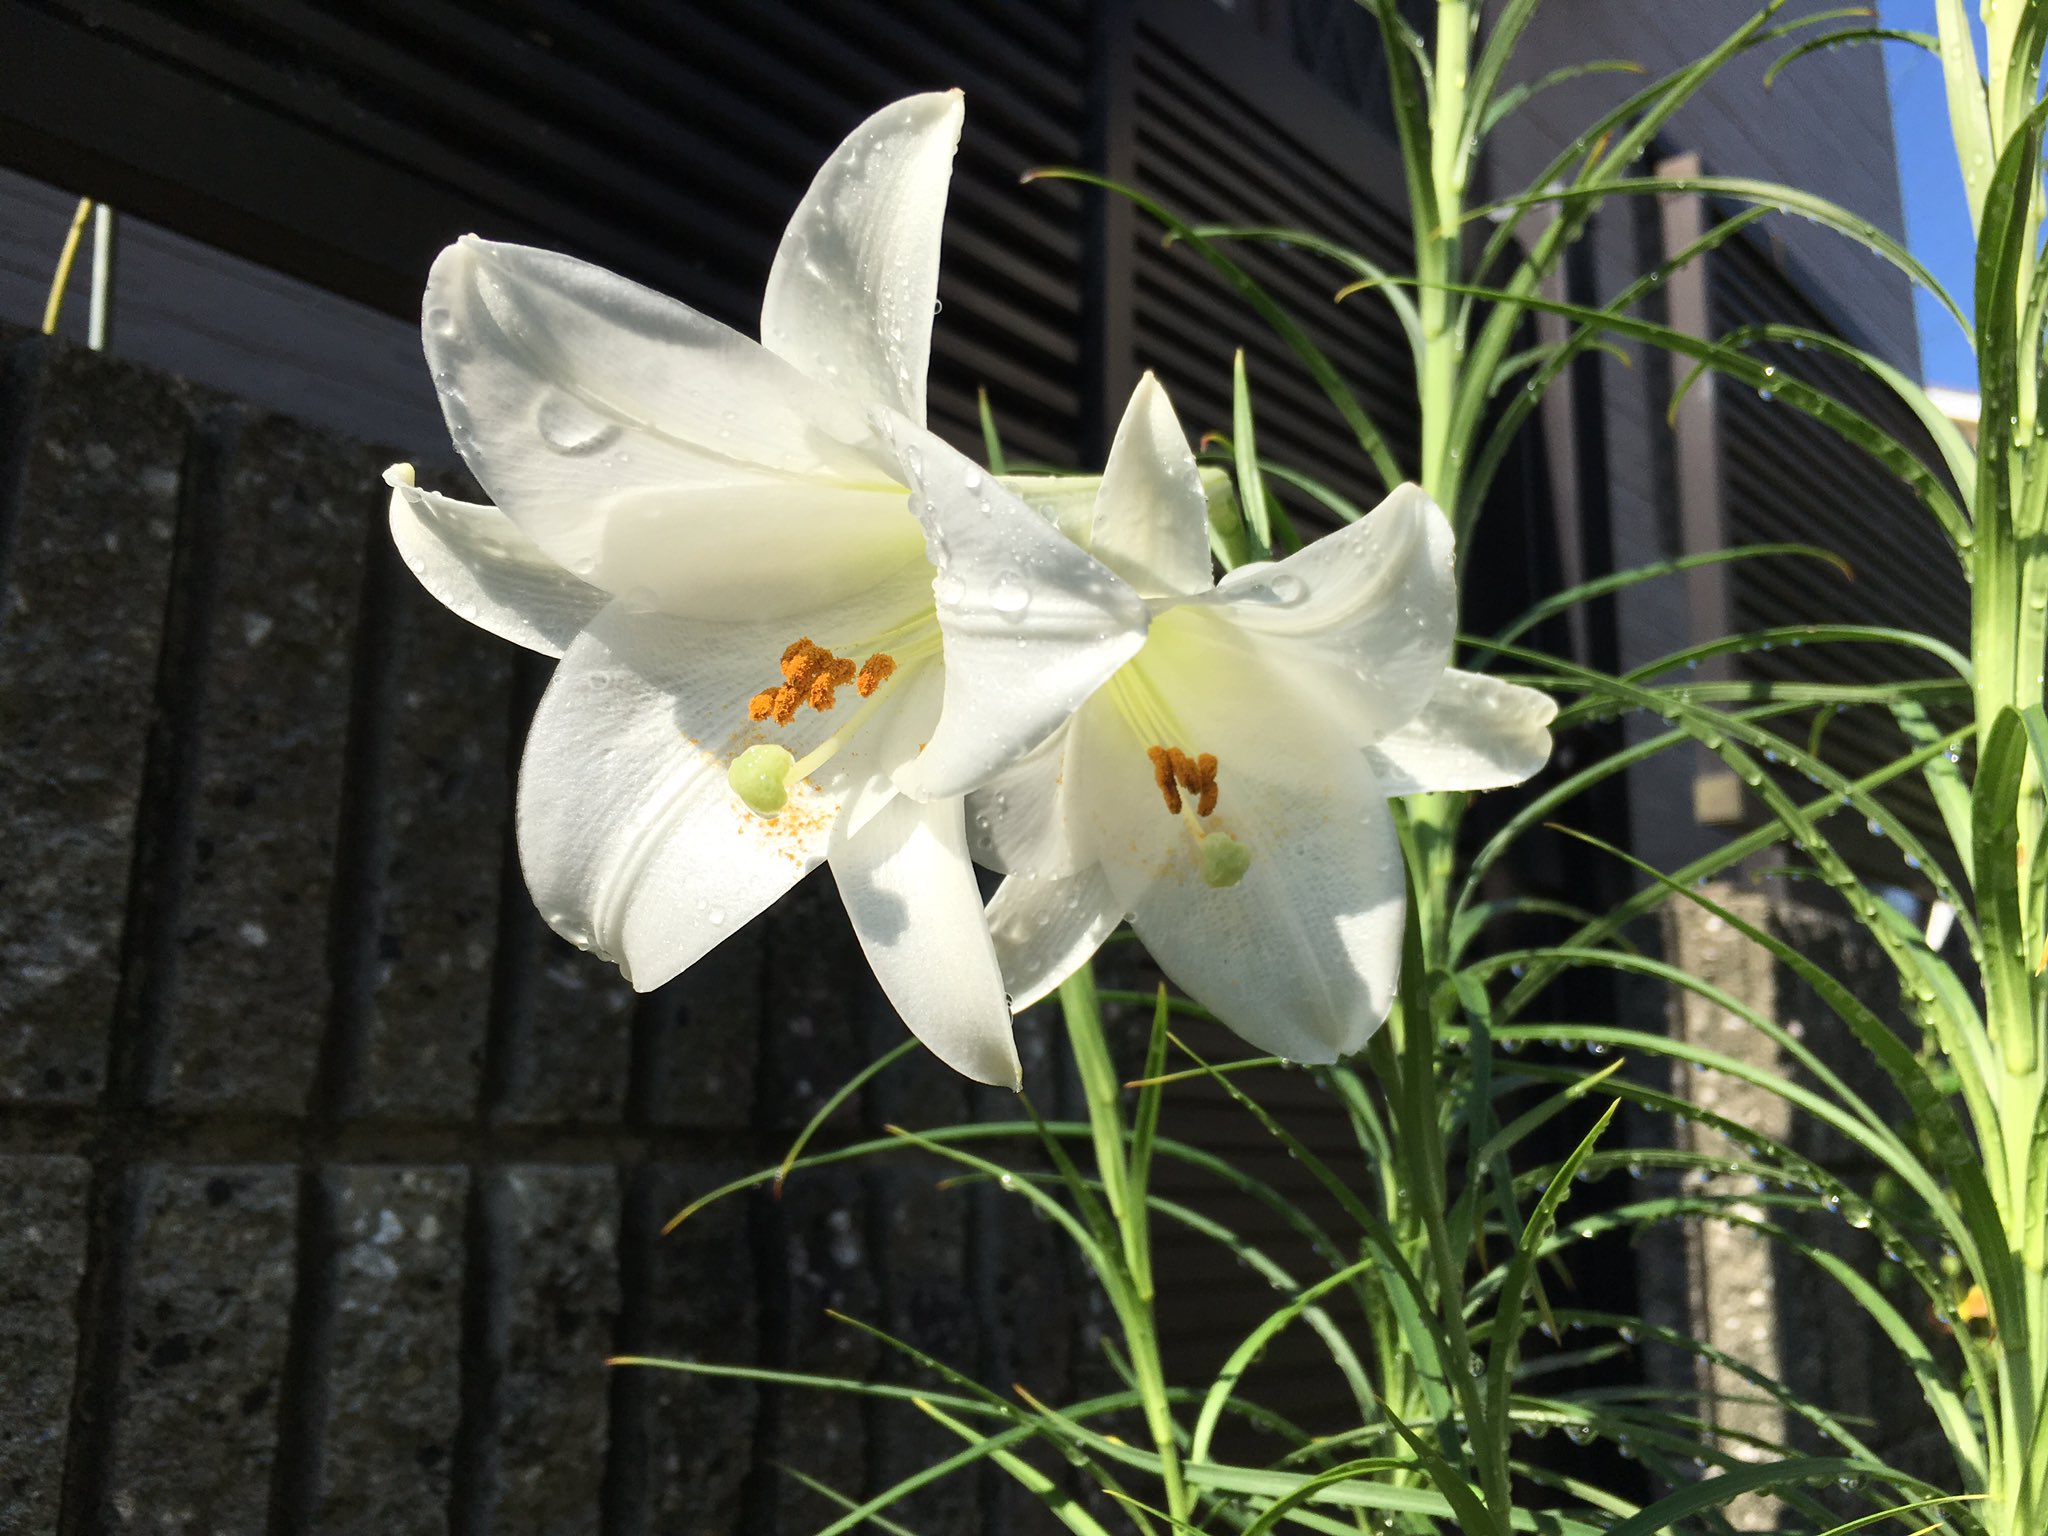 Hata687 百合の花がキレイに咲いていました 百合子とか小百合とか女の子の名前に使われるだけあって 優雅で綺麗な花ですね 花 百合 ユリ ゆり Flower Flowers Lily 白 白い花 植物 優雅 Elegant White キリトリセカイ ファインダー越し